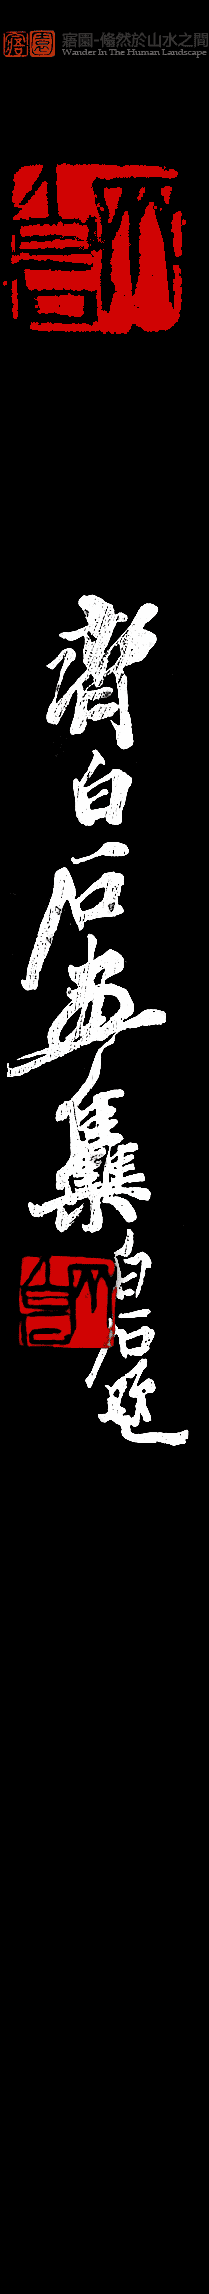 高山仰止-20世纪中國畫名家系列——畫壇巨匠齊白石